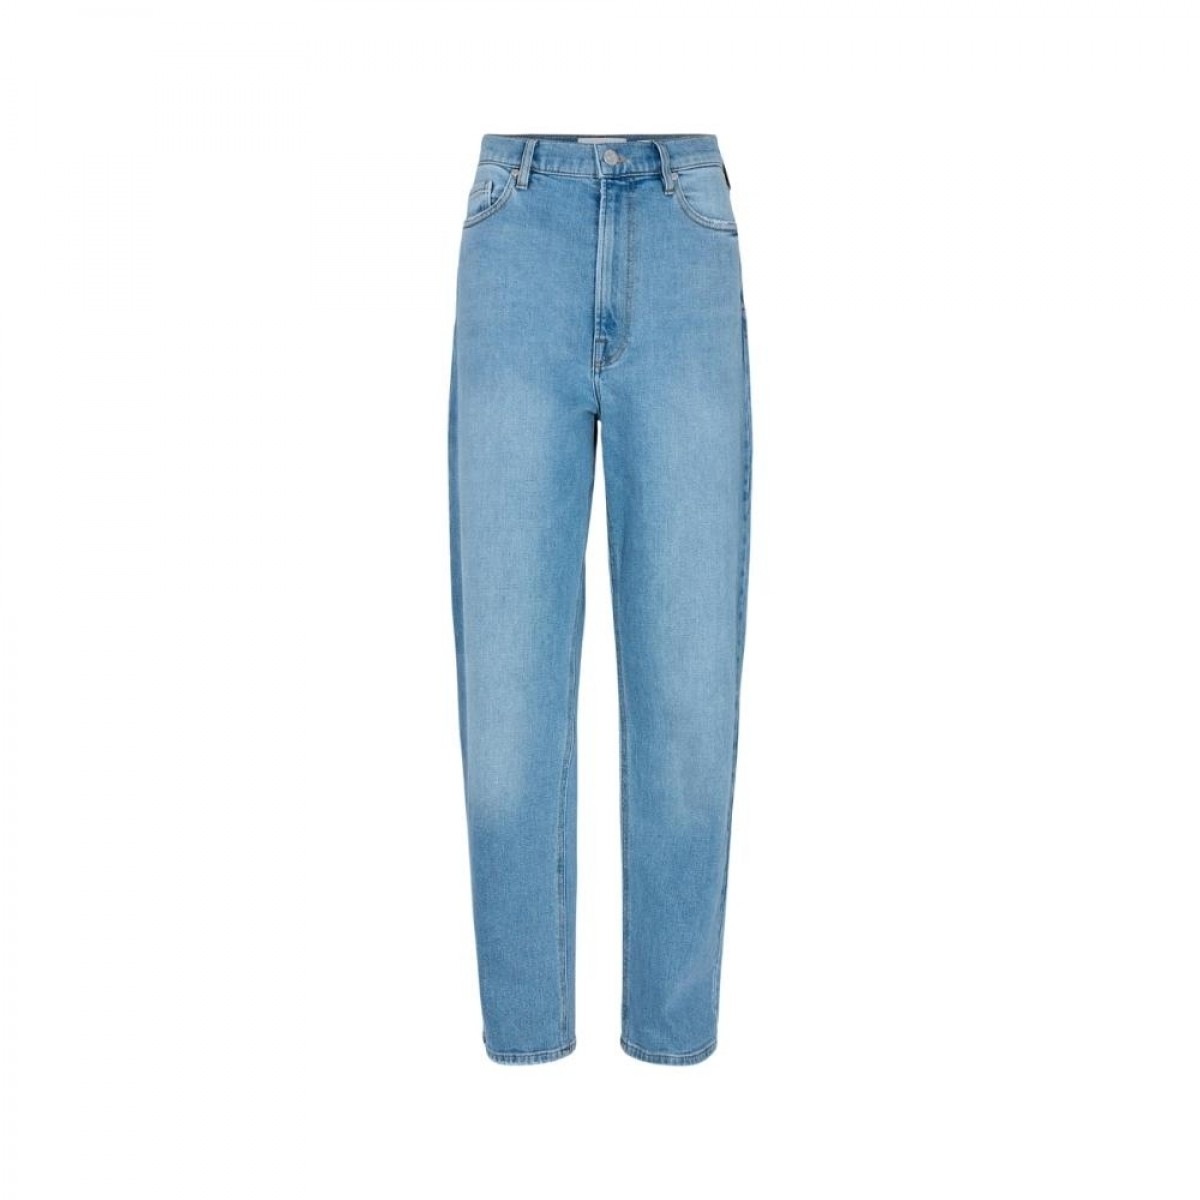 ewa jeans wash piemonte - denim blue - front